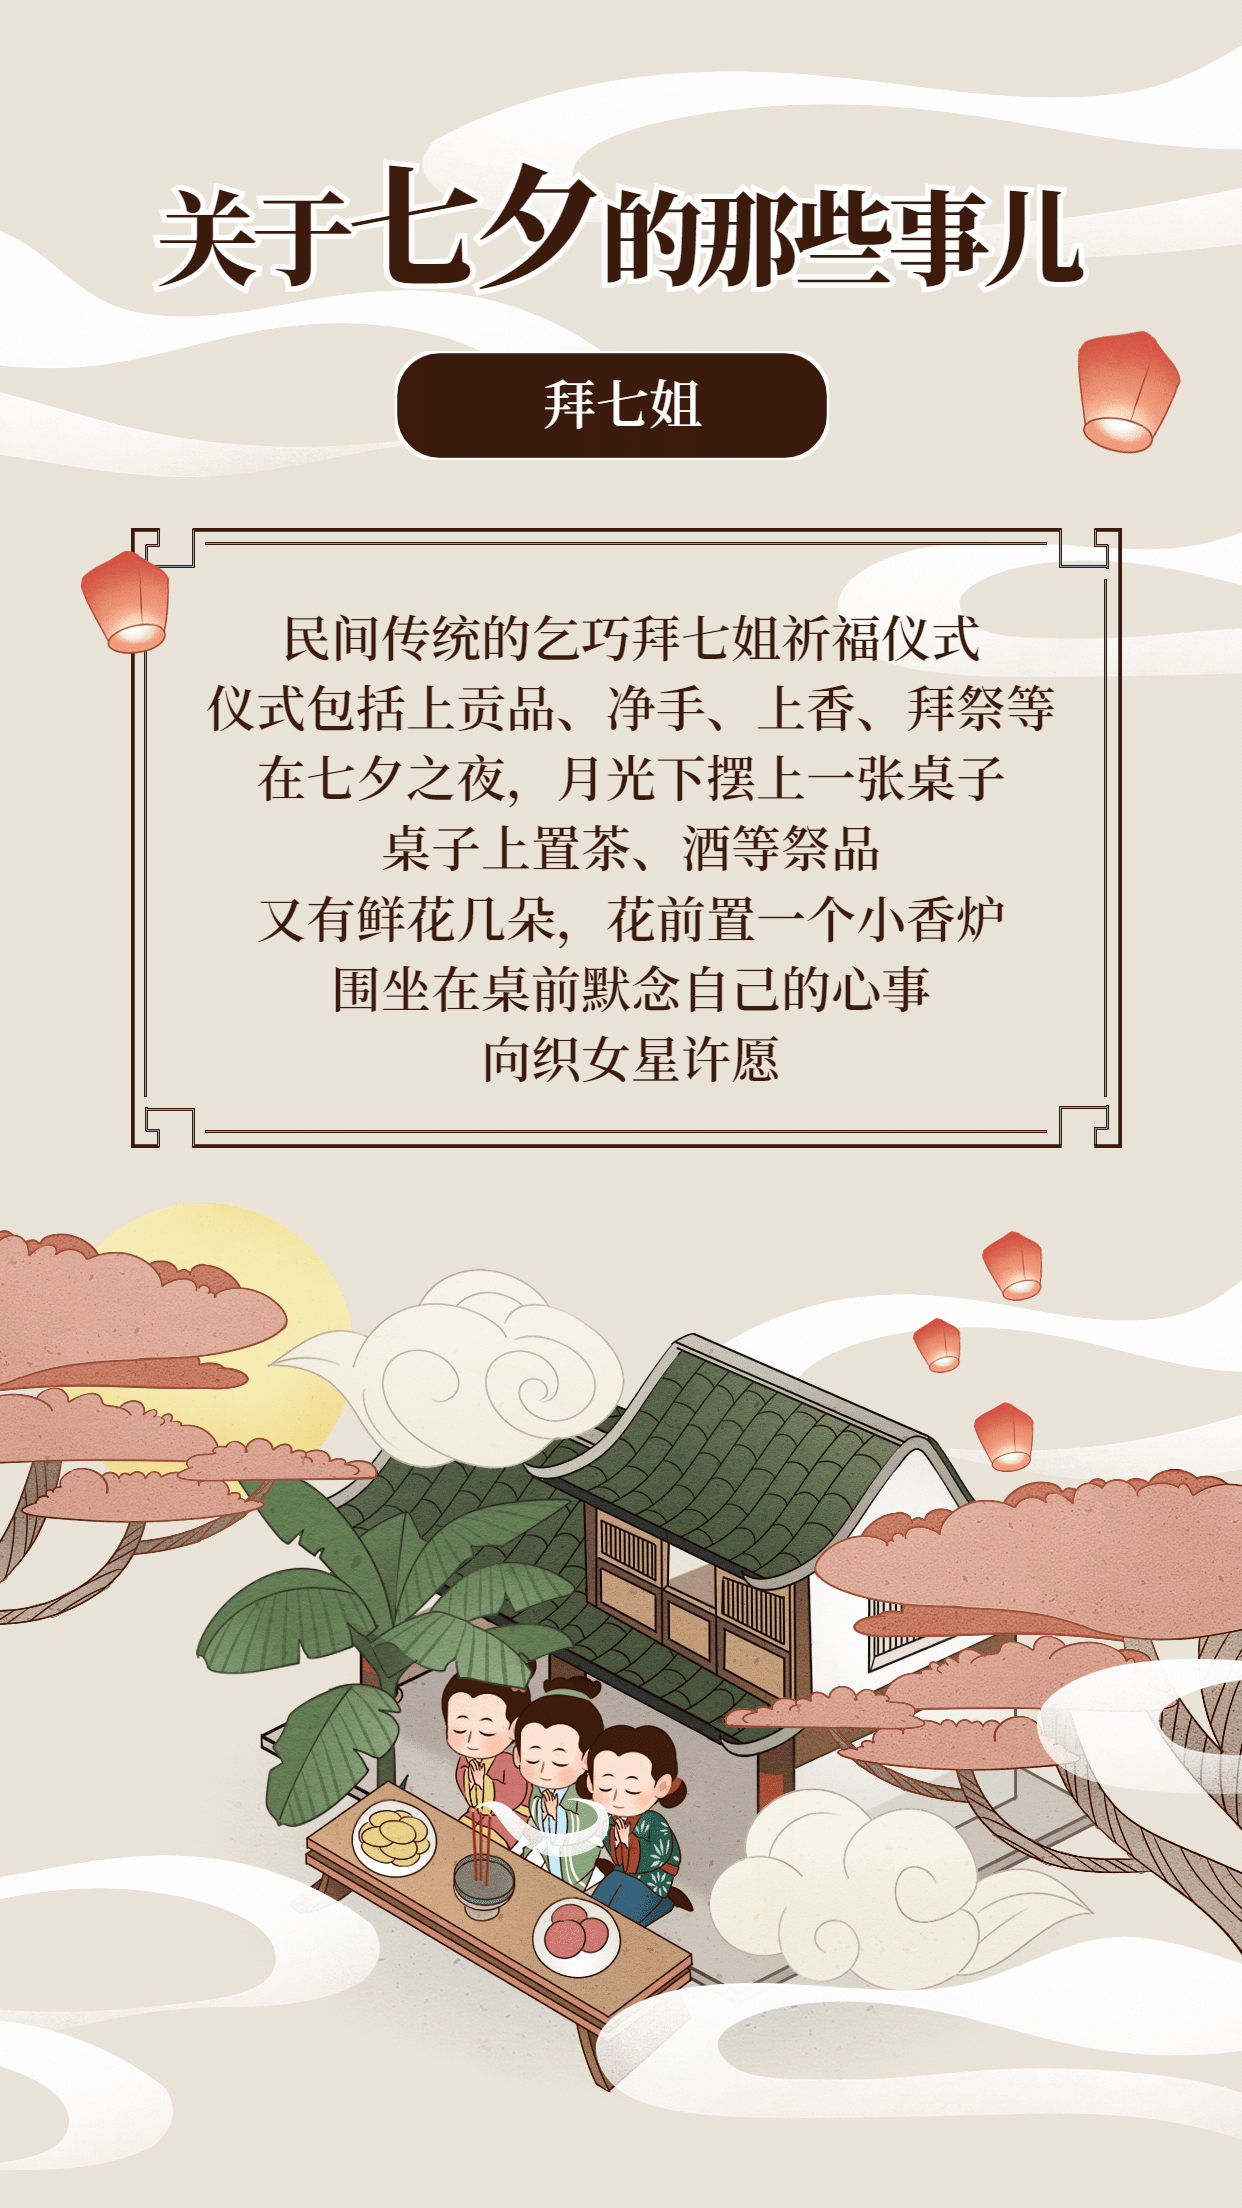 七夕节习俗科普中国风套系手机海报